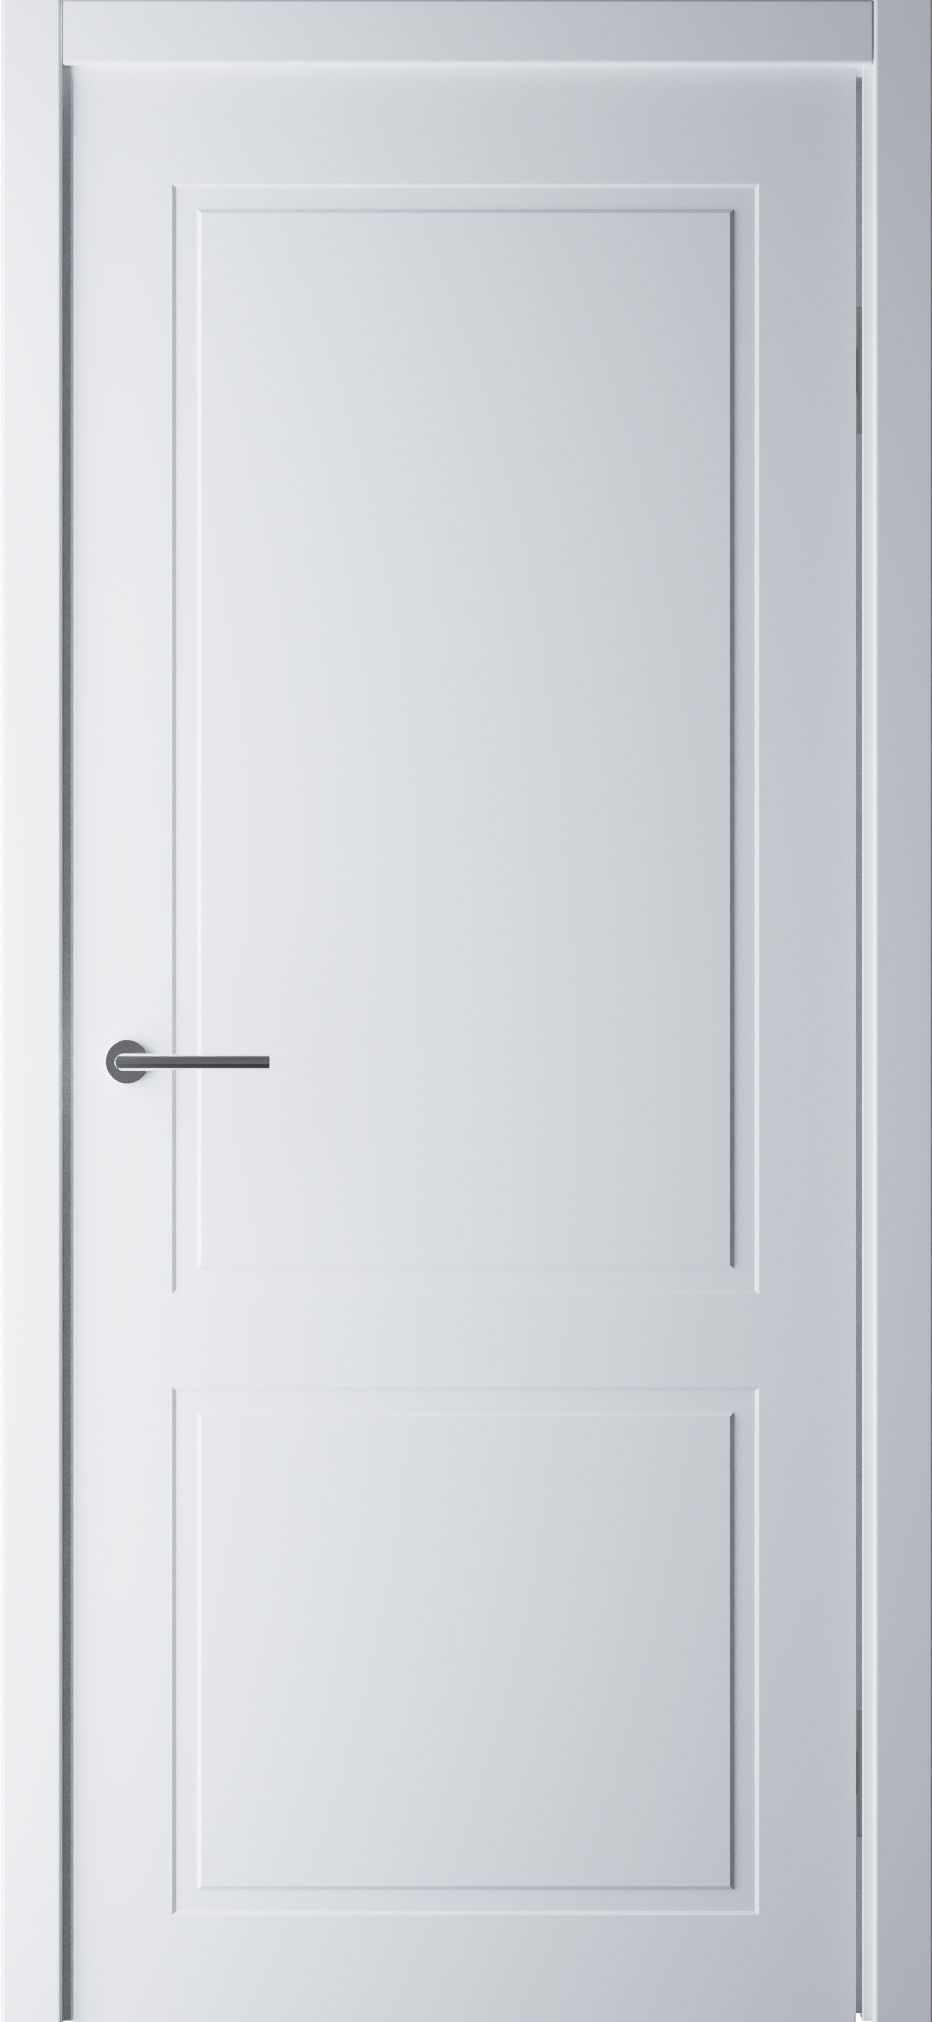 Полотно дверное глухое СХЕМА Эмаль-2, ПГ СтильНео-2 700 белый (без замка)